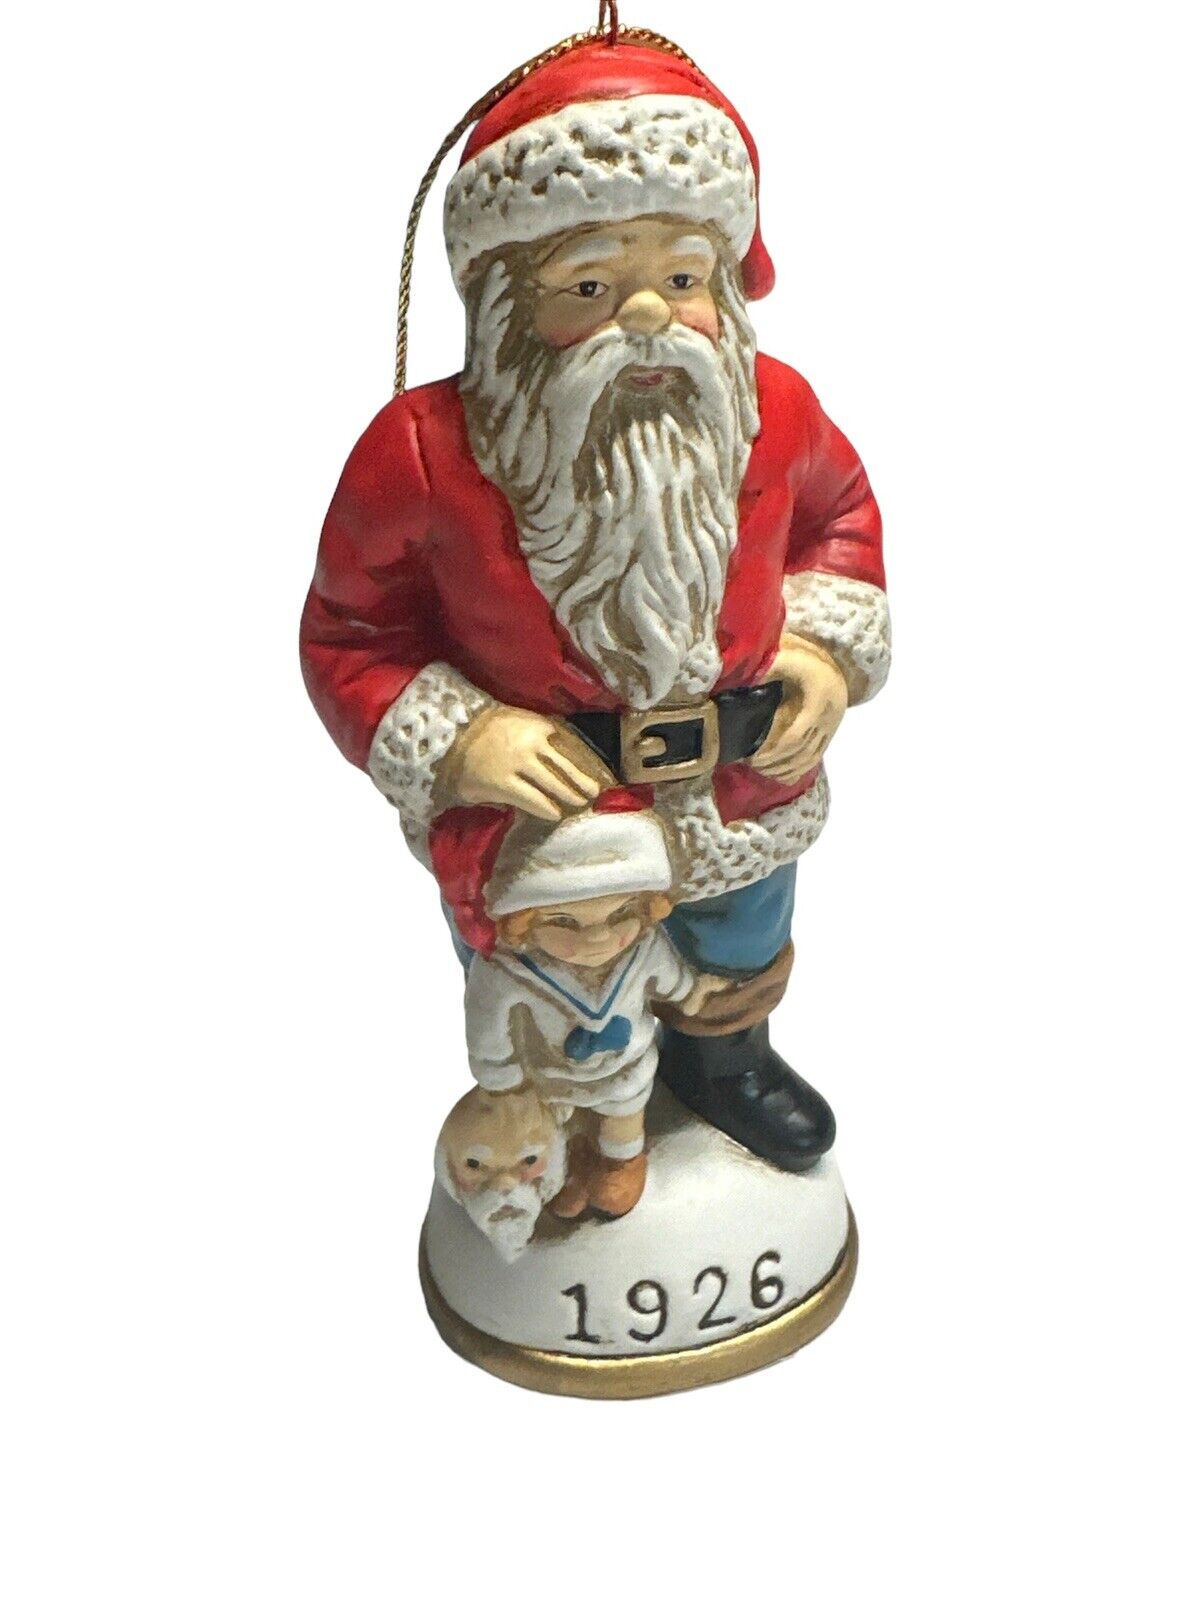 1926 Memories of Santa - Santa and His Li'l Impersonator - SIGNED RARE